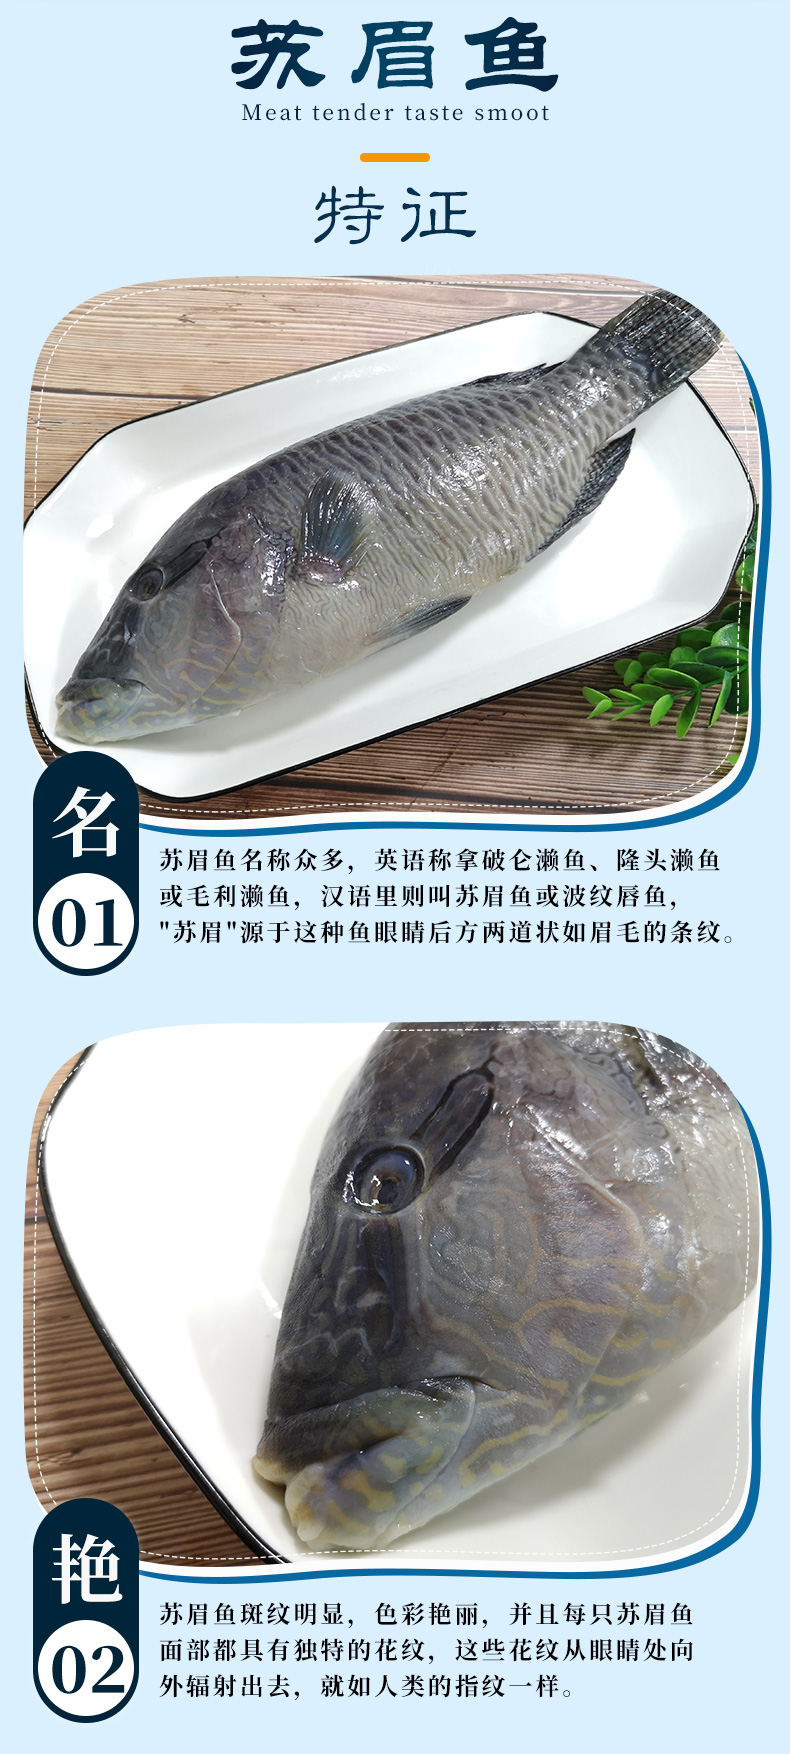 冷冻养殖苏眉鱼600-700g/条 青衣鱼波纹唇鱼鲜活冷冻水产